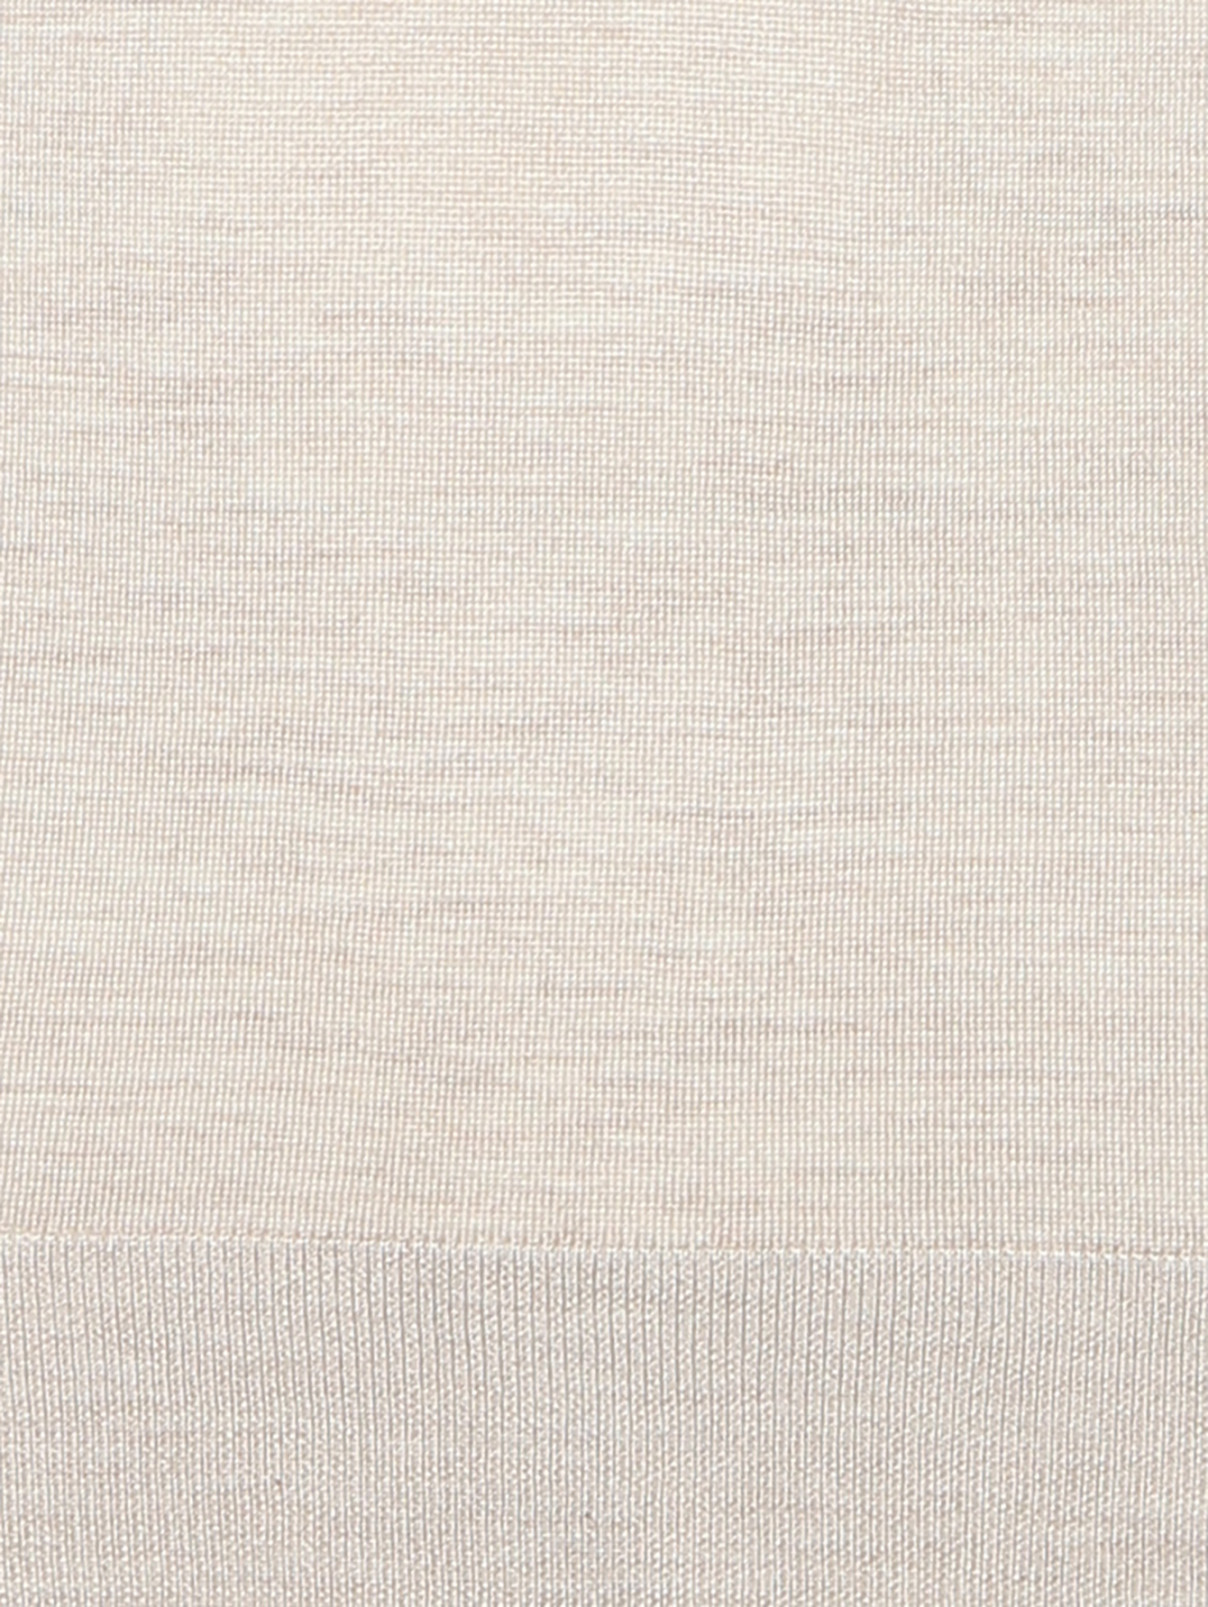 Джемпер из шерсти и шелка с V-образным вырезом Piacenza Cashmere  –  Деталь1  – Цвет:  Бежевый